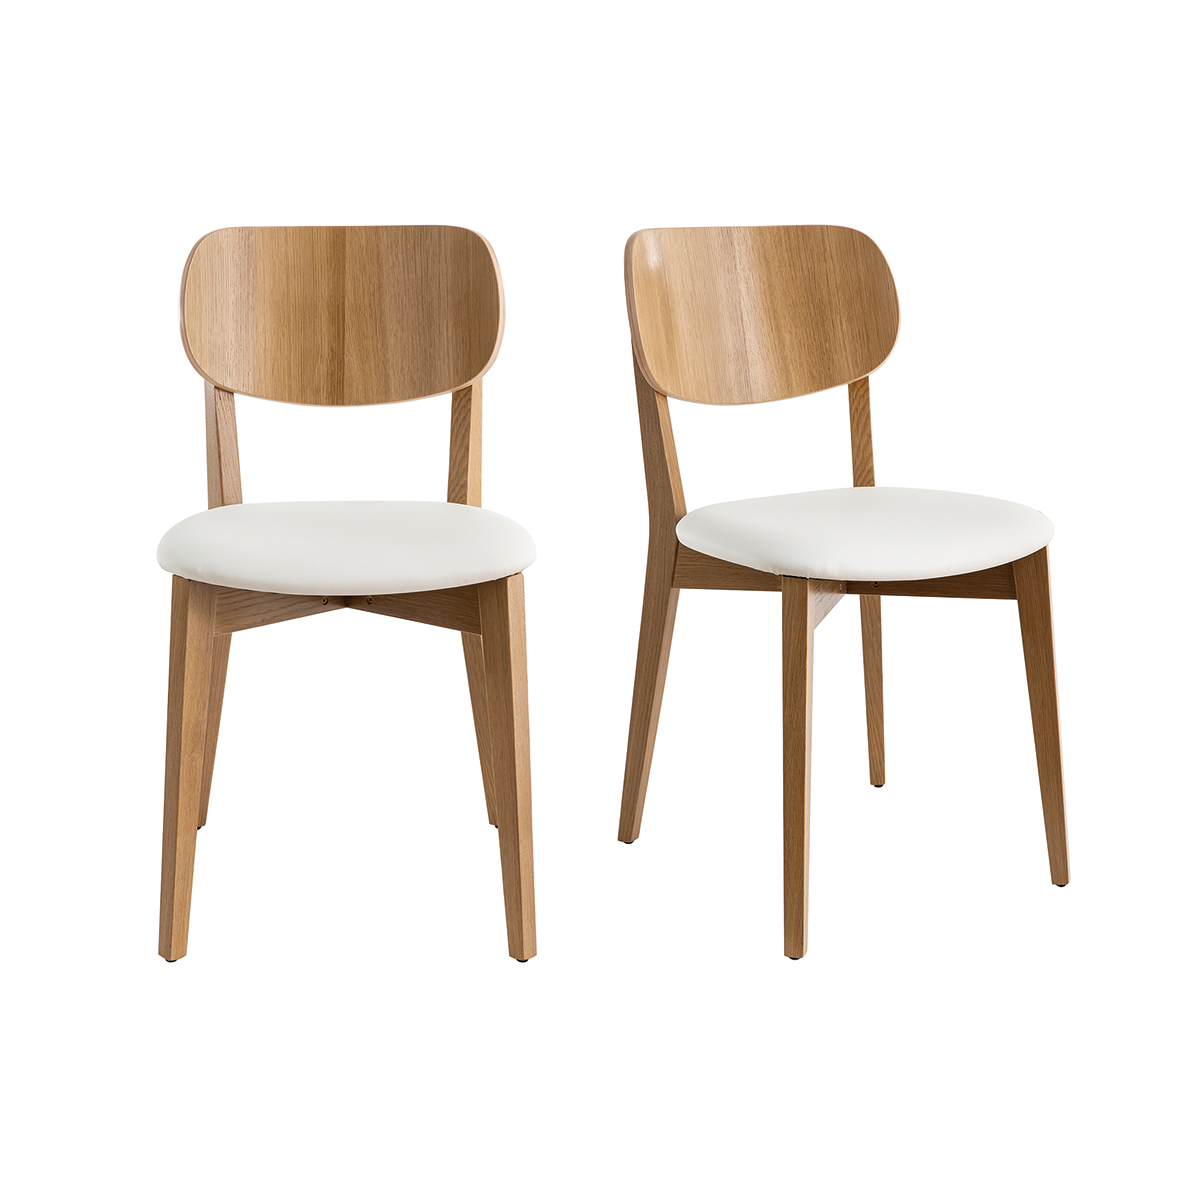 Chaises vintage chêne et assise blanche (lot de 2) LUCIA vue1